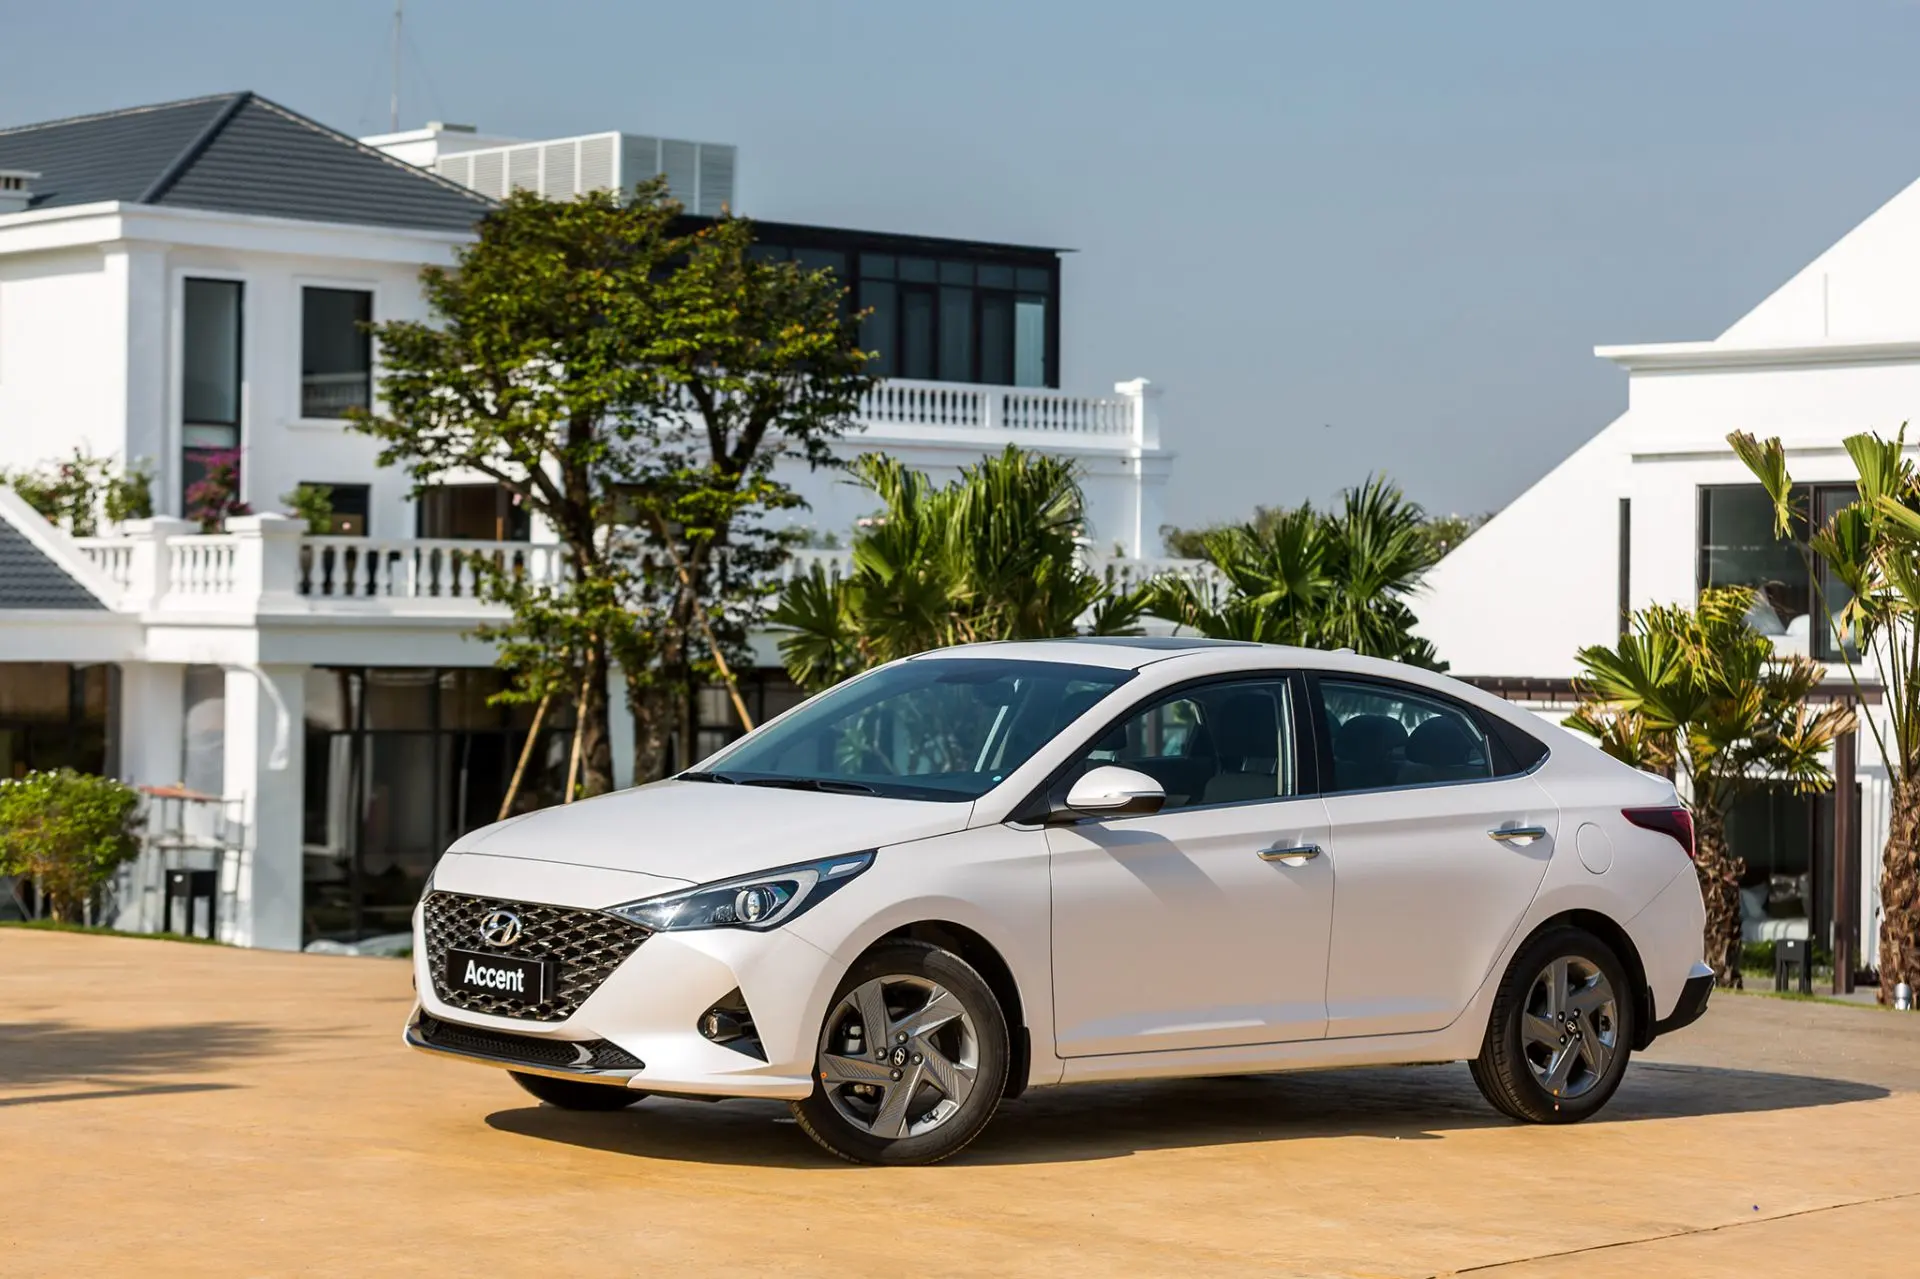 Lý do gì giúp Hyundai Accent luôn có doanh số dẫn đầu phân khúc? - Ảnh 1.